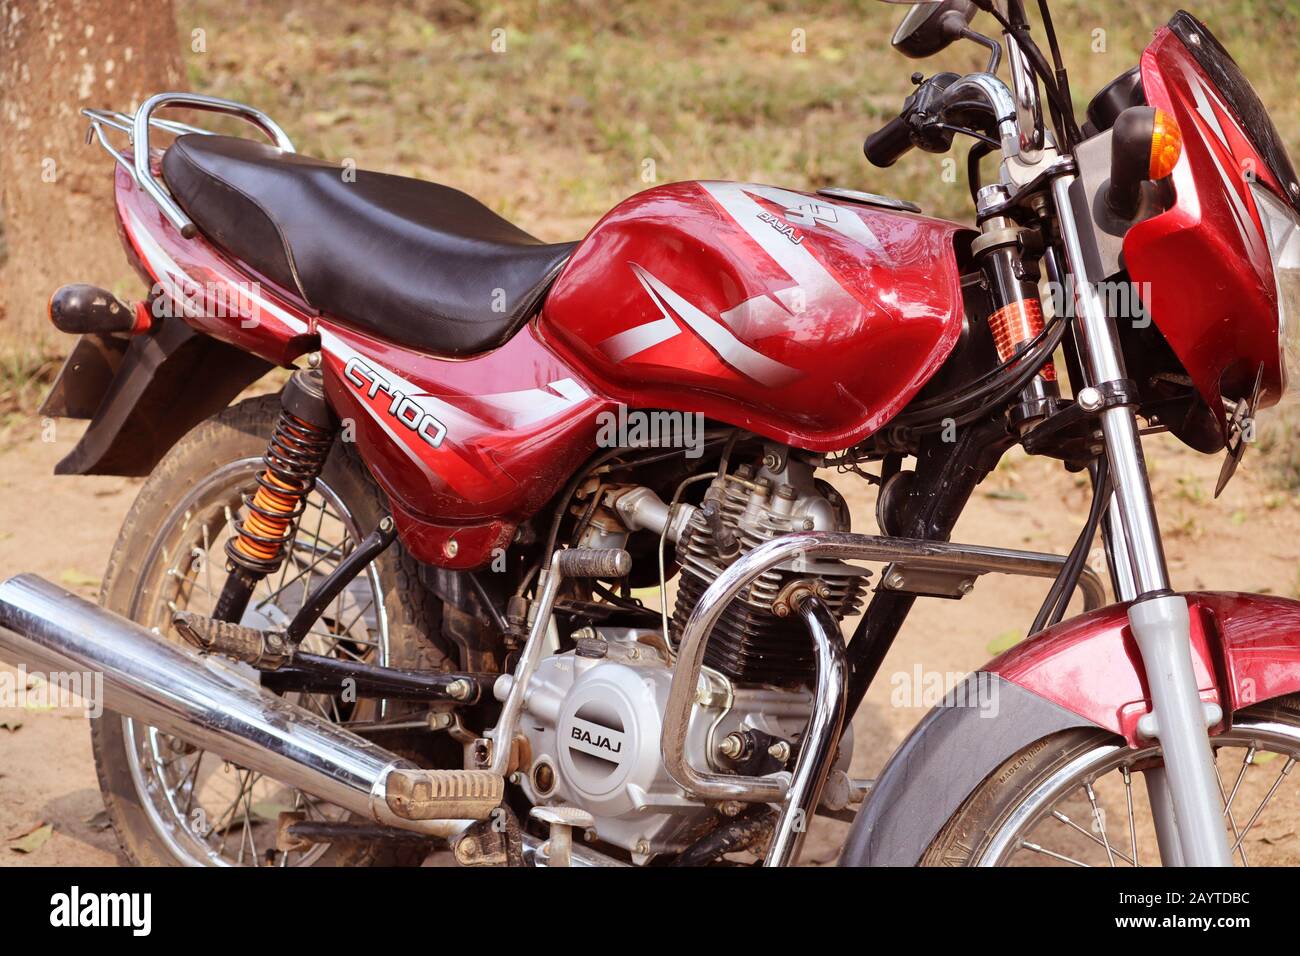 Moto Parcheggio sulla strada. Moto a colori rosso e nero. Moto modello CT 100. Foto Stock